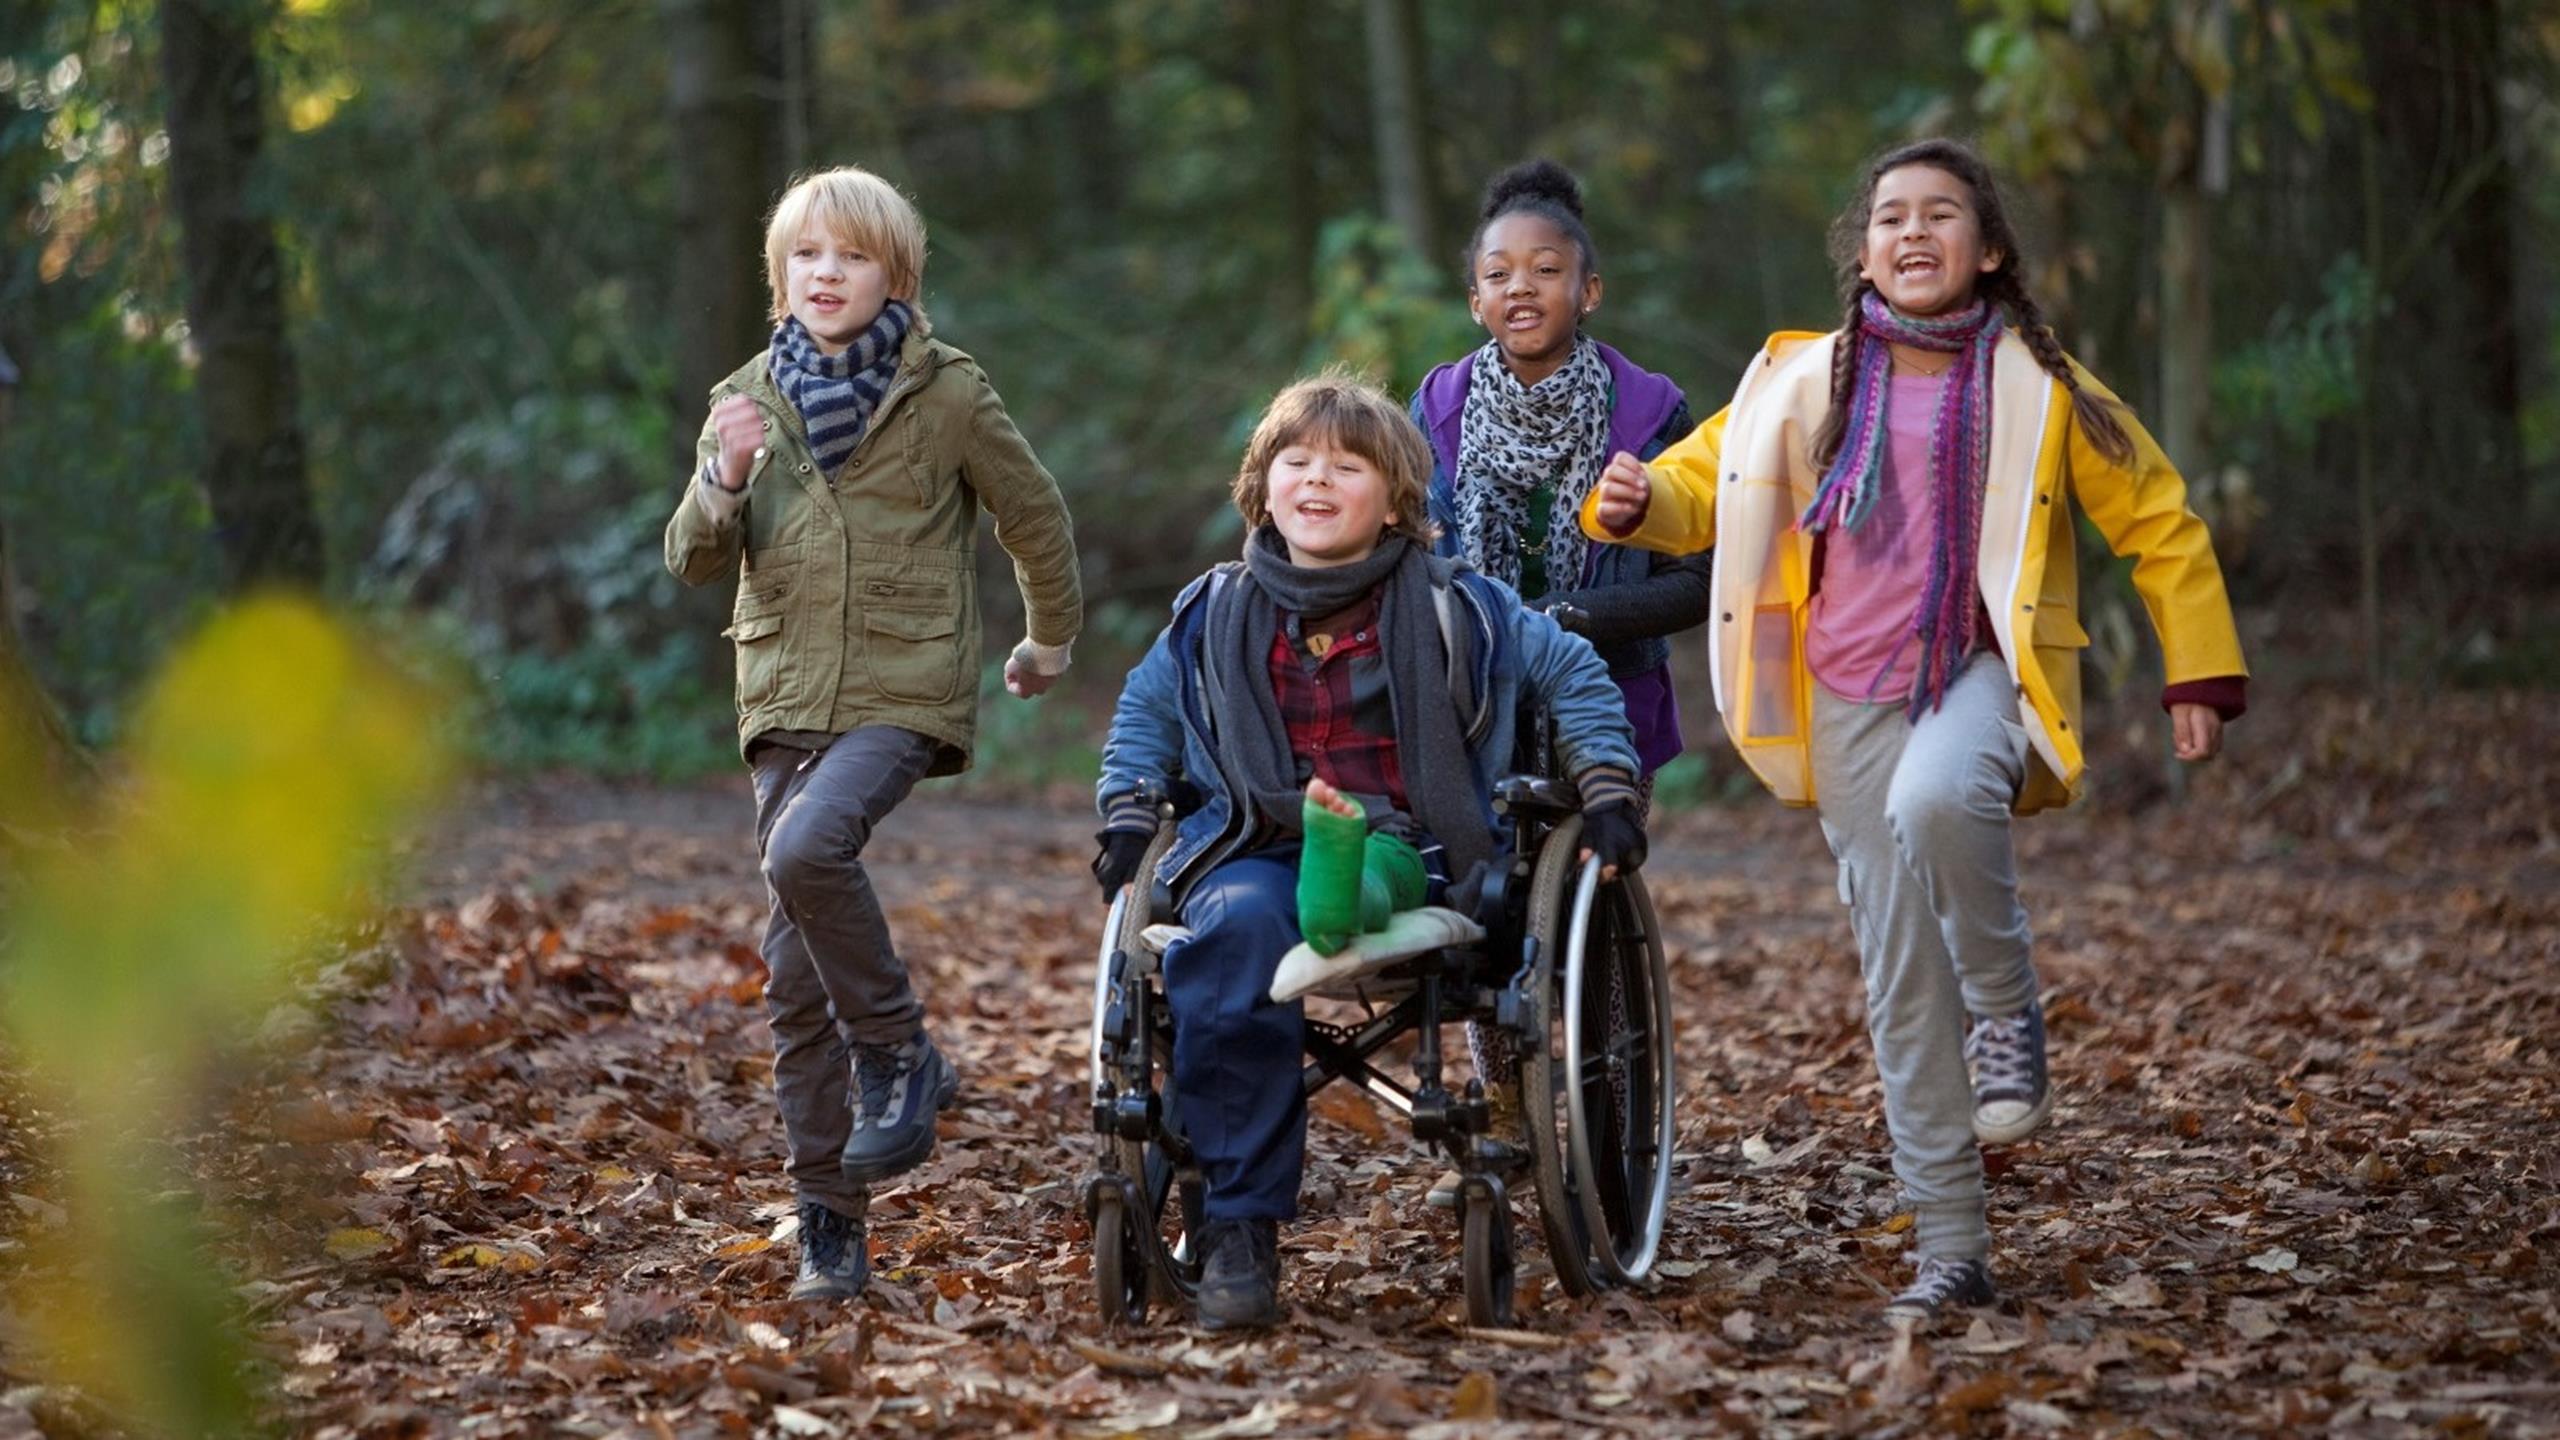 Vier Kinder rennen im Wald auf den Betrachtenden zu, ein Junge sitzt im Rollstuhl, er hat ein Bein eingegipst und wird von einem Mädchen geschoben